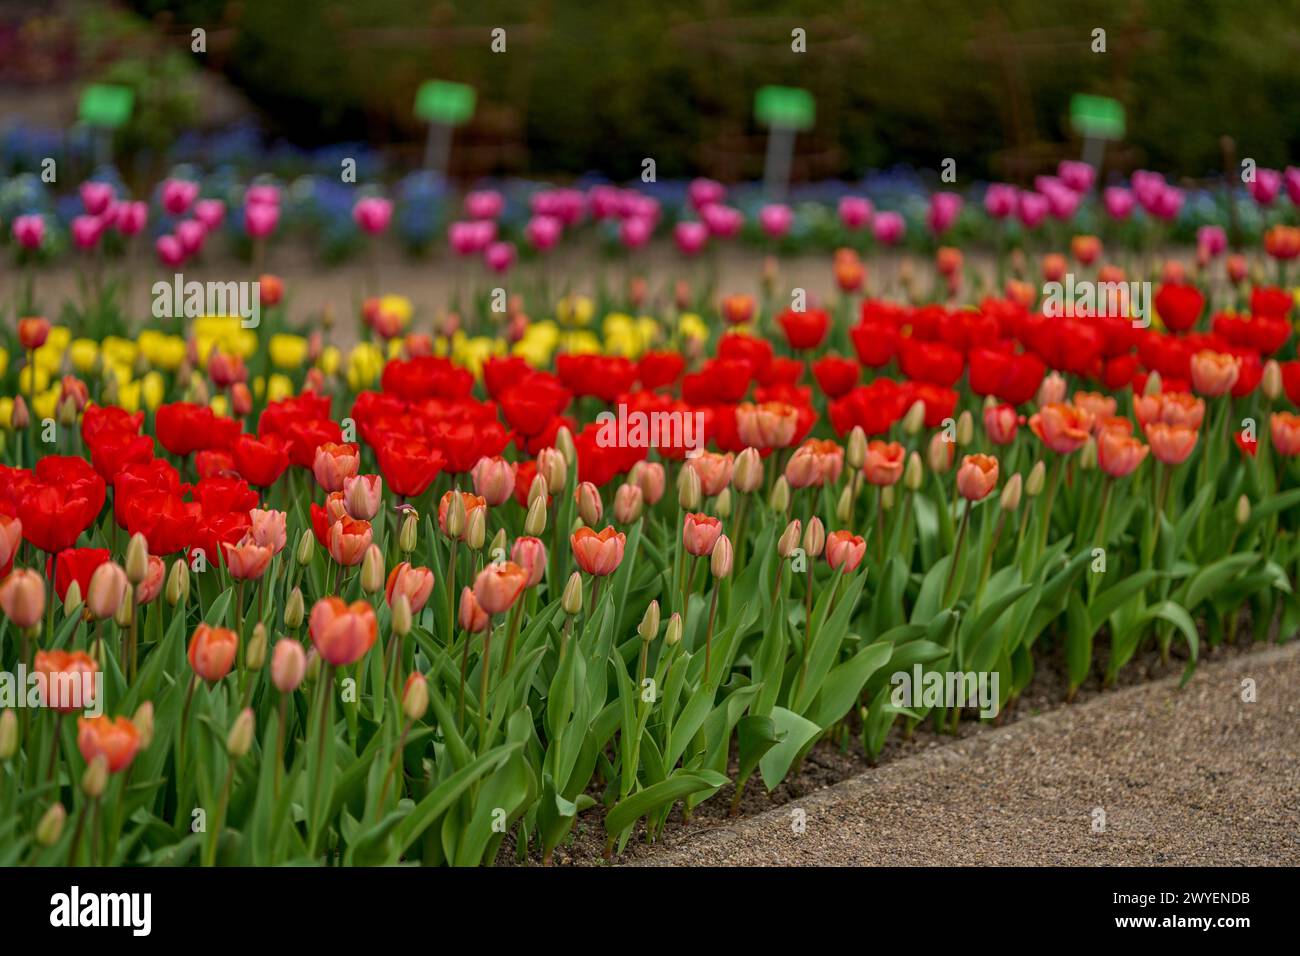 Rangées de tulipes molticolores fleuries luxuriantes et colorées Banque D'Images